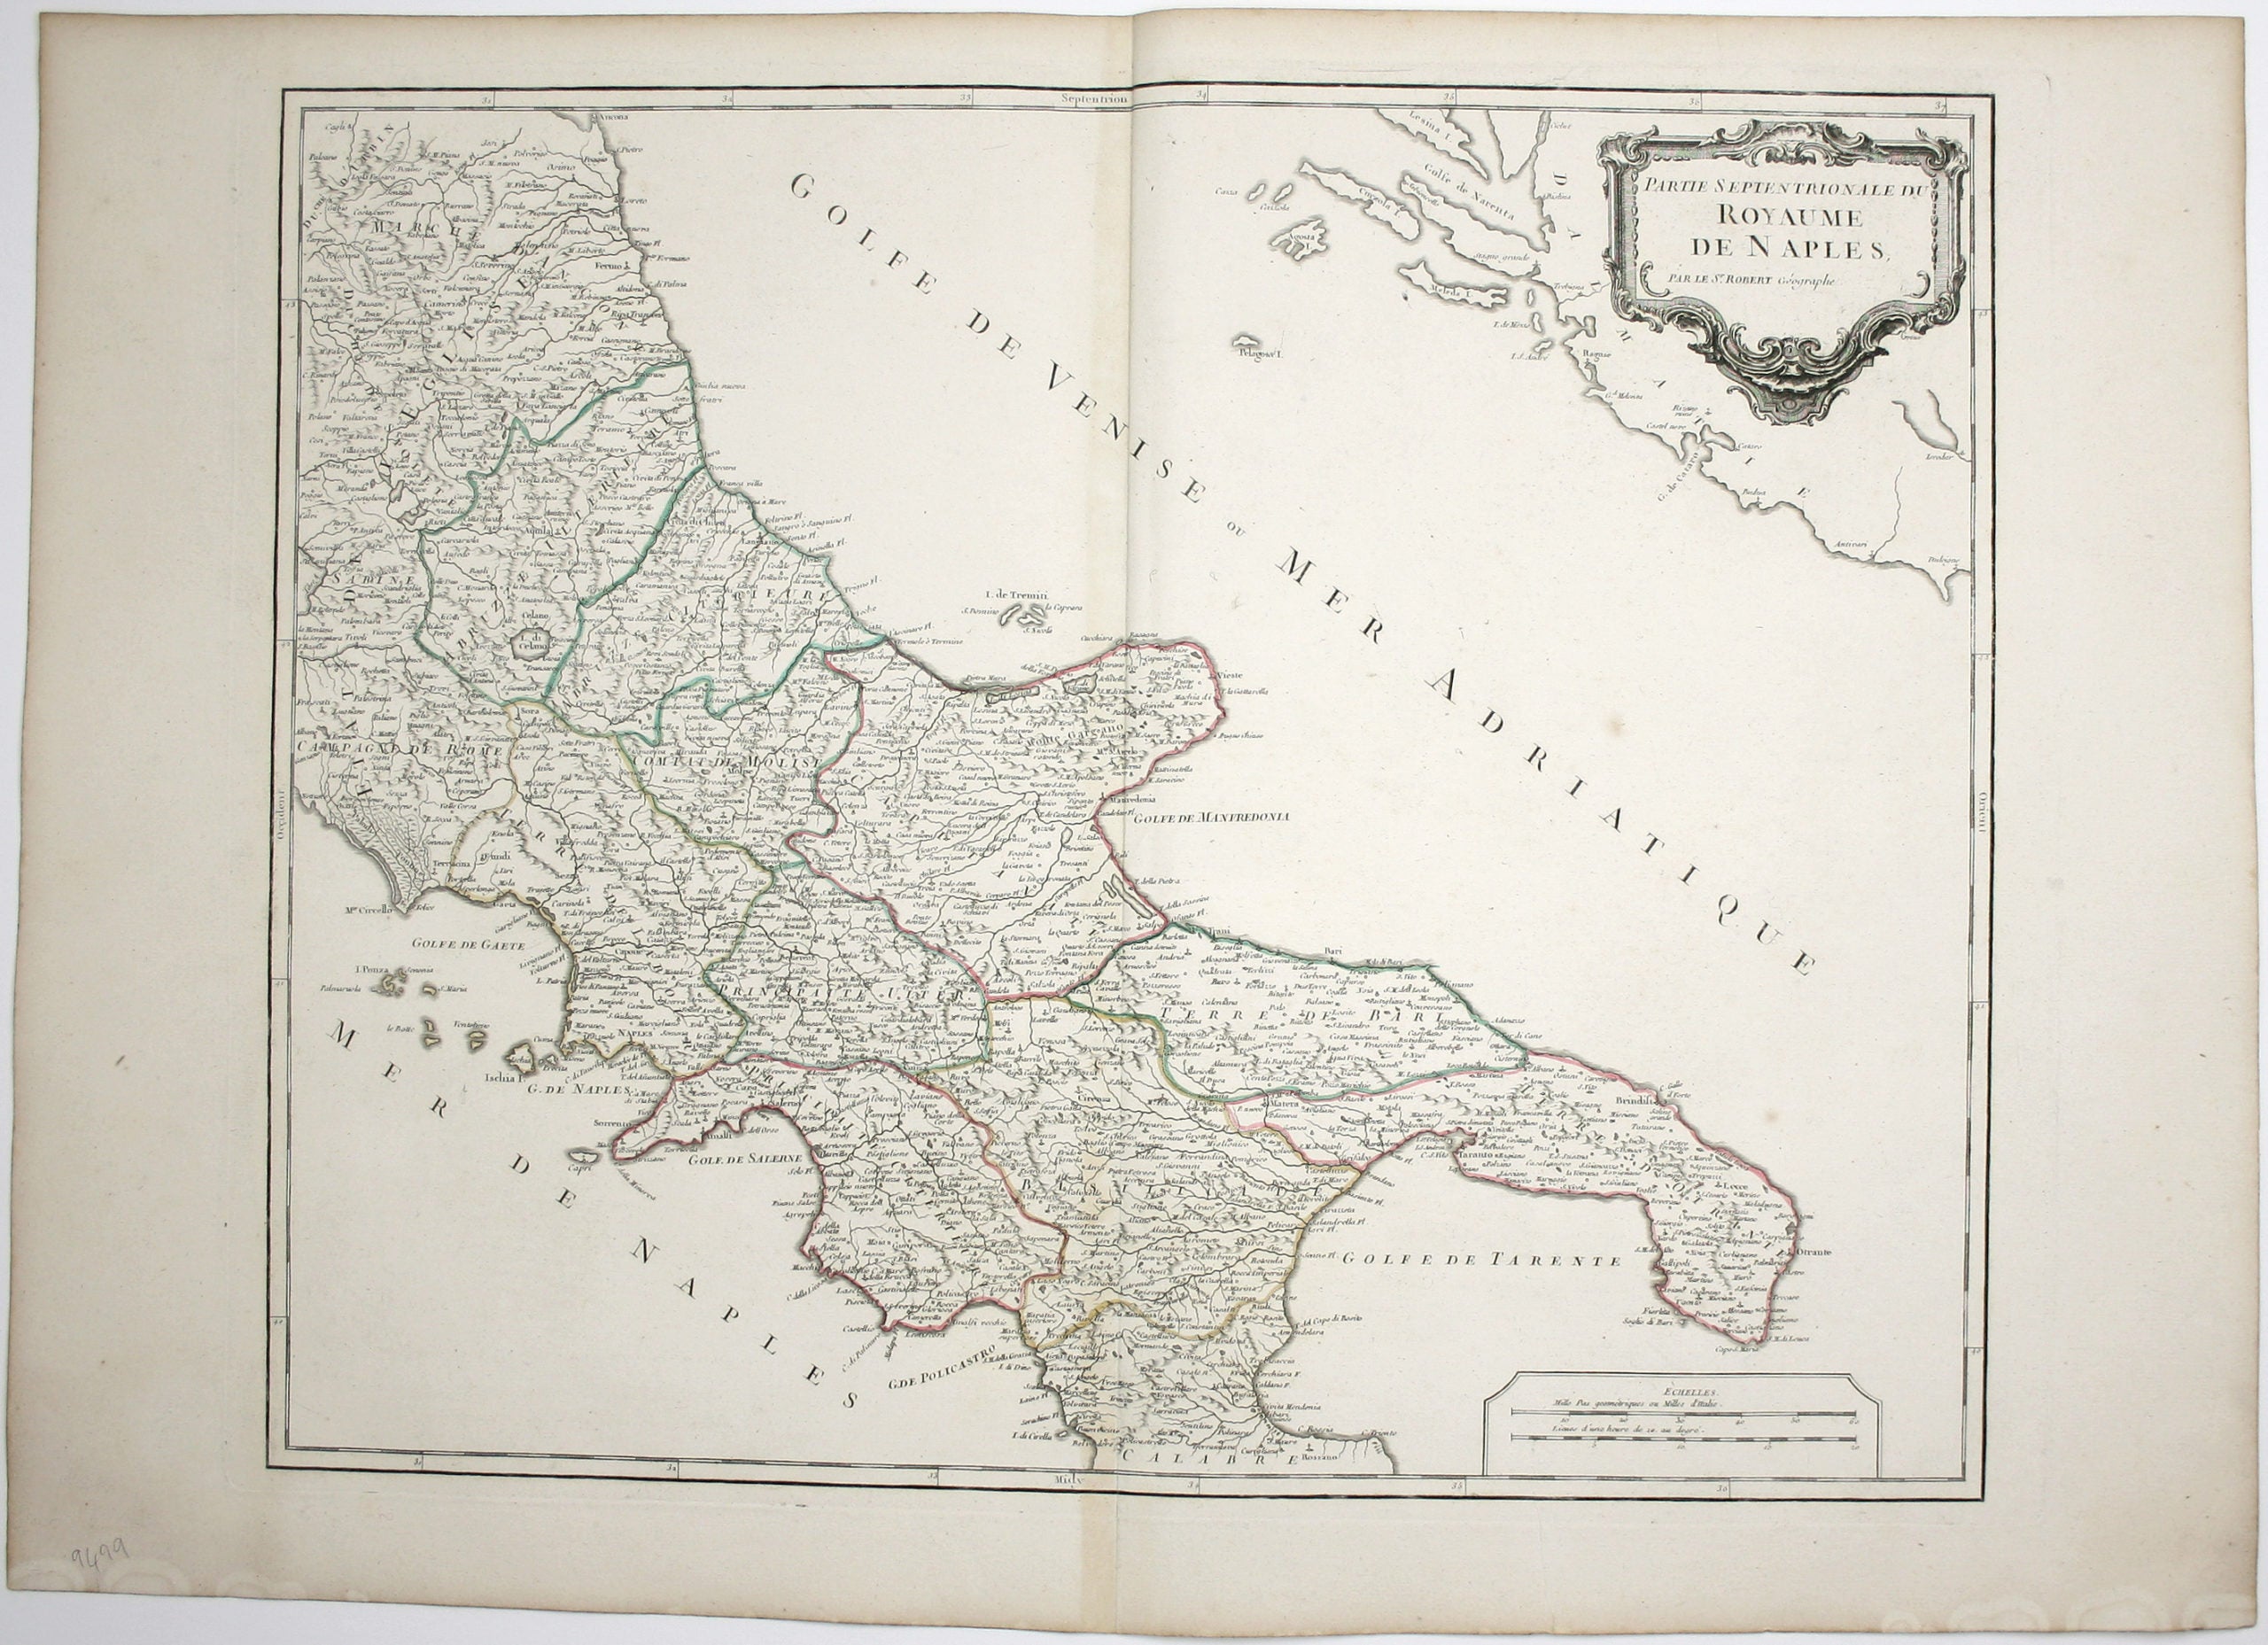 Robert de Vaugondy’s Map of the Northern Part of the Kingdom of Naples